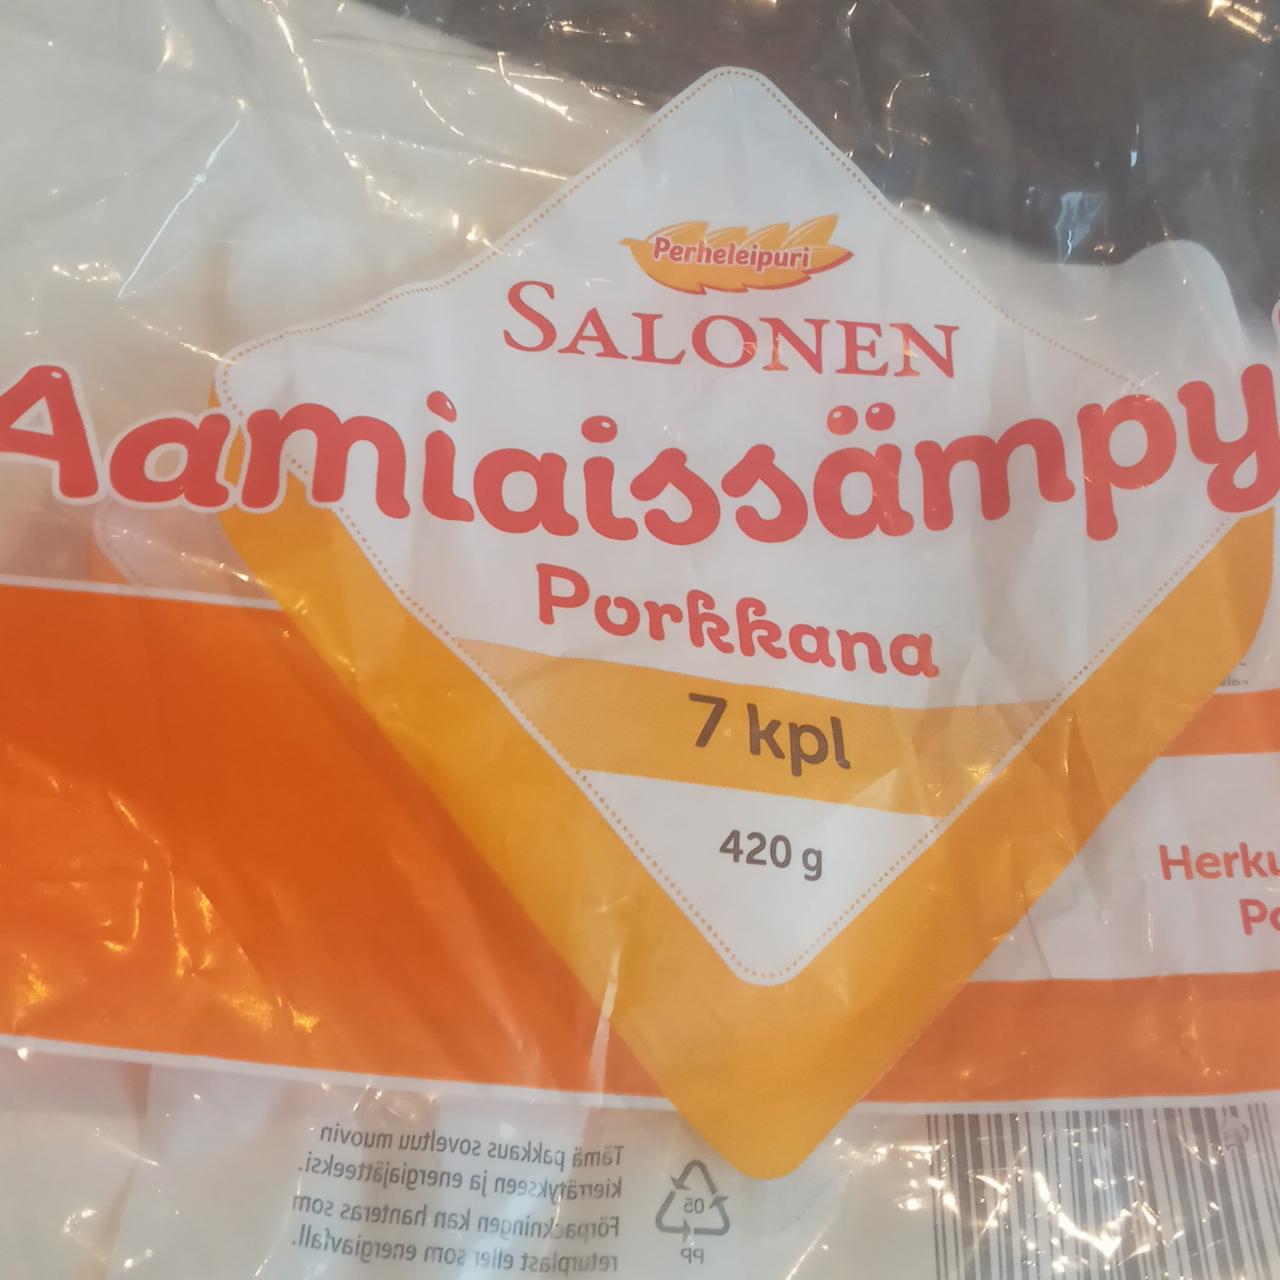 Фото - Perheleipuri Aamiaissämpylä porkkana Salonen